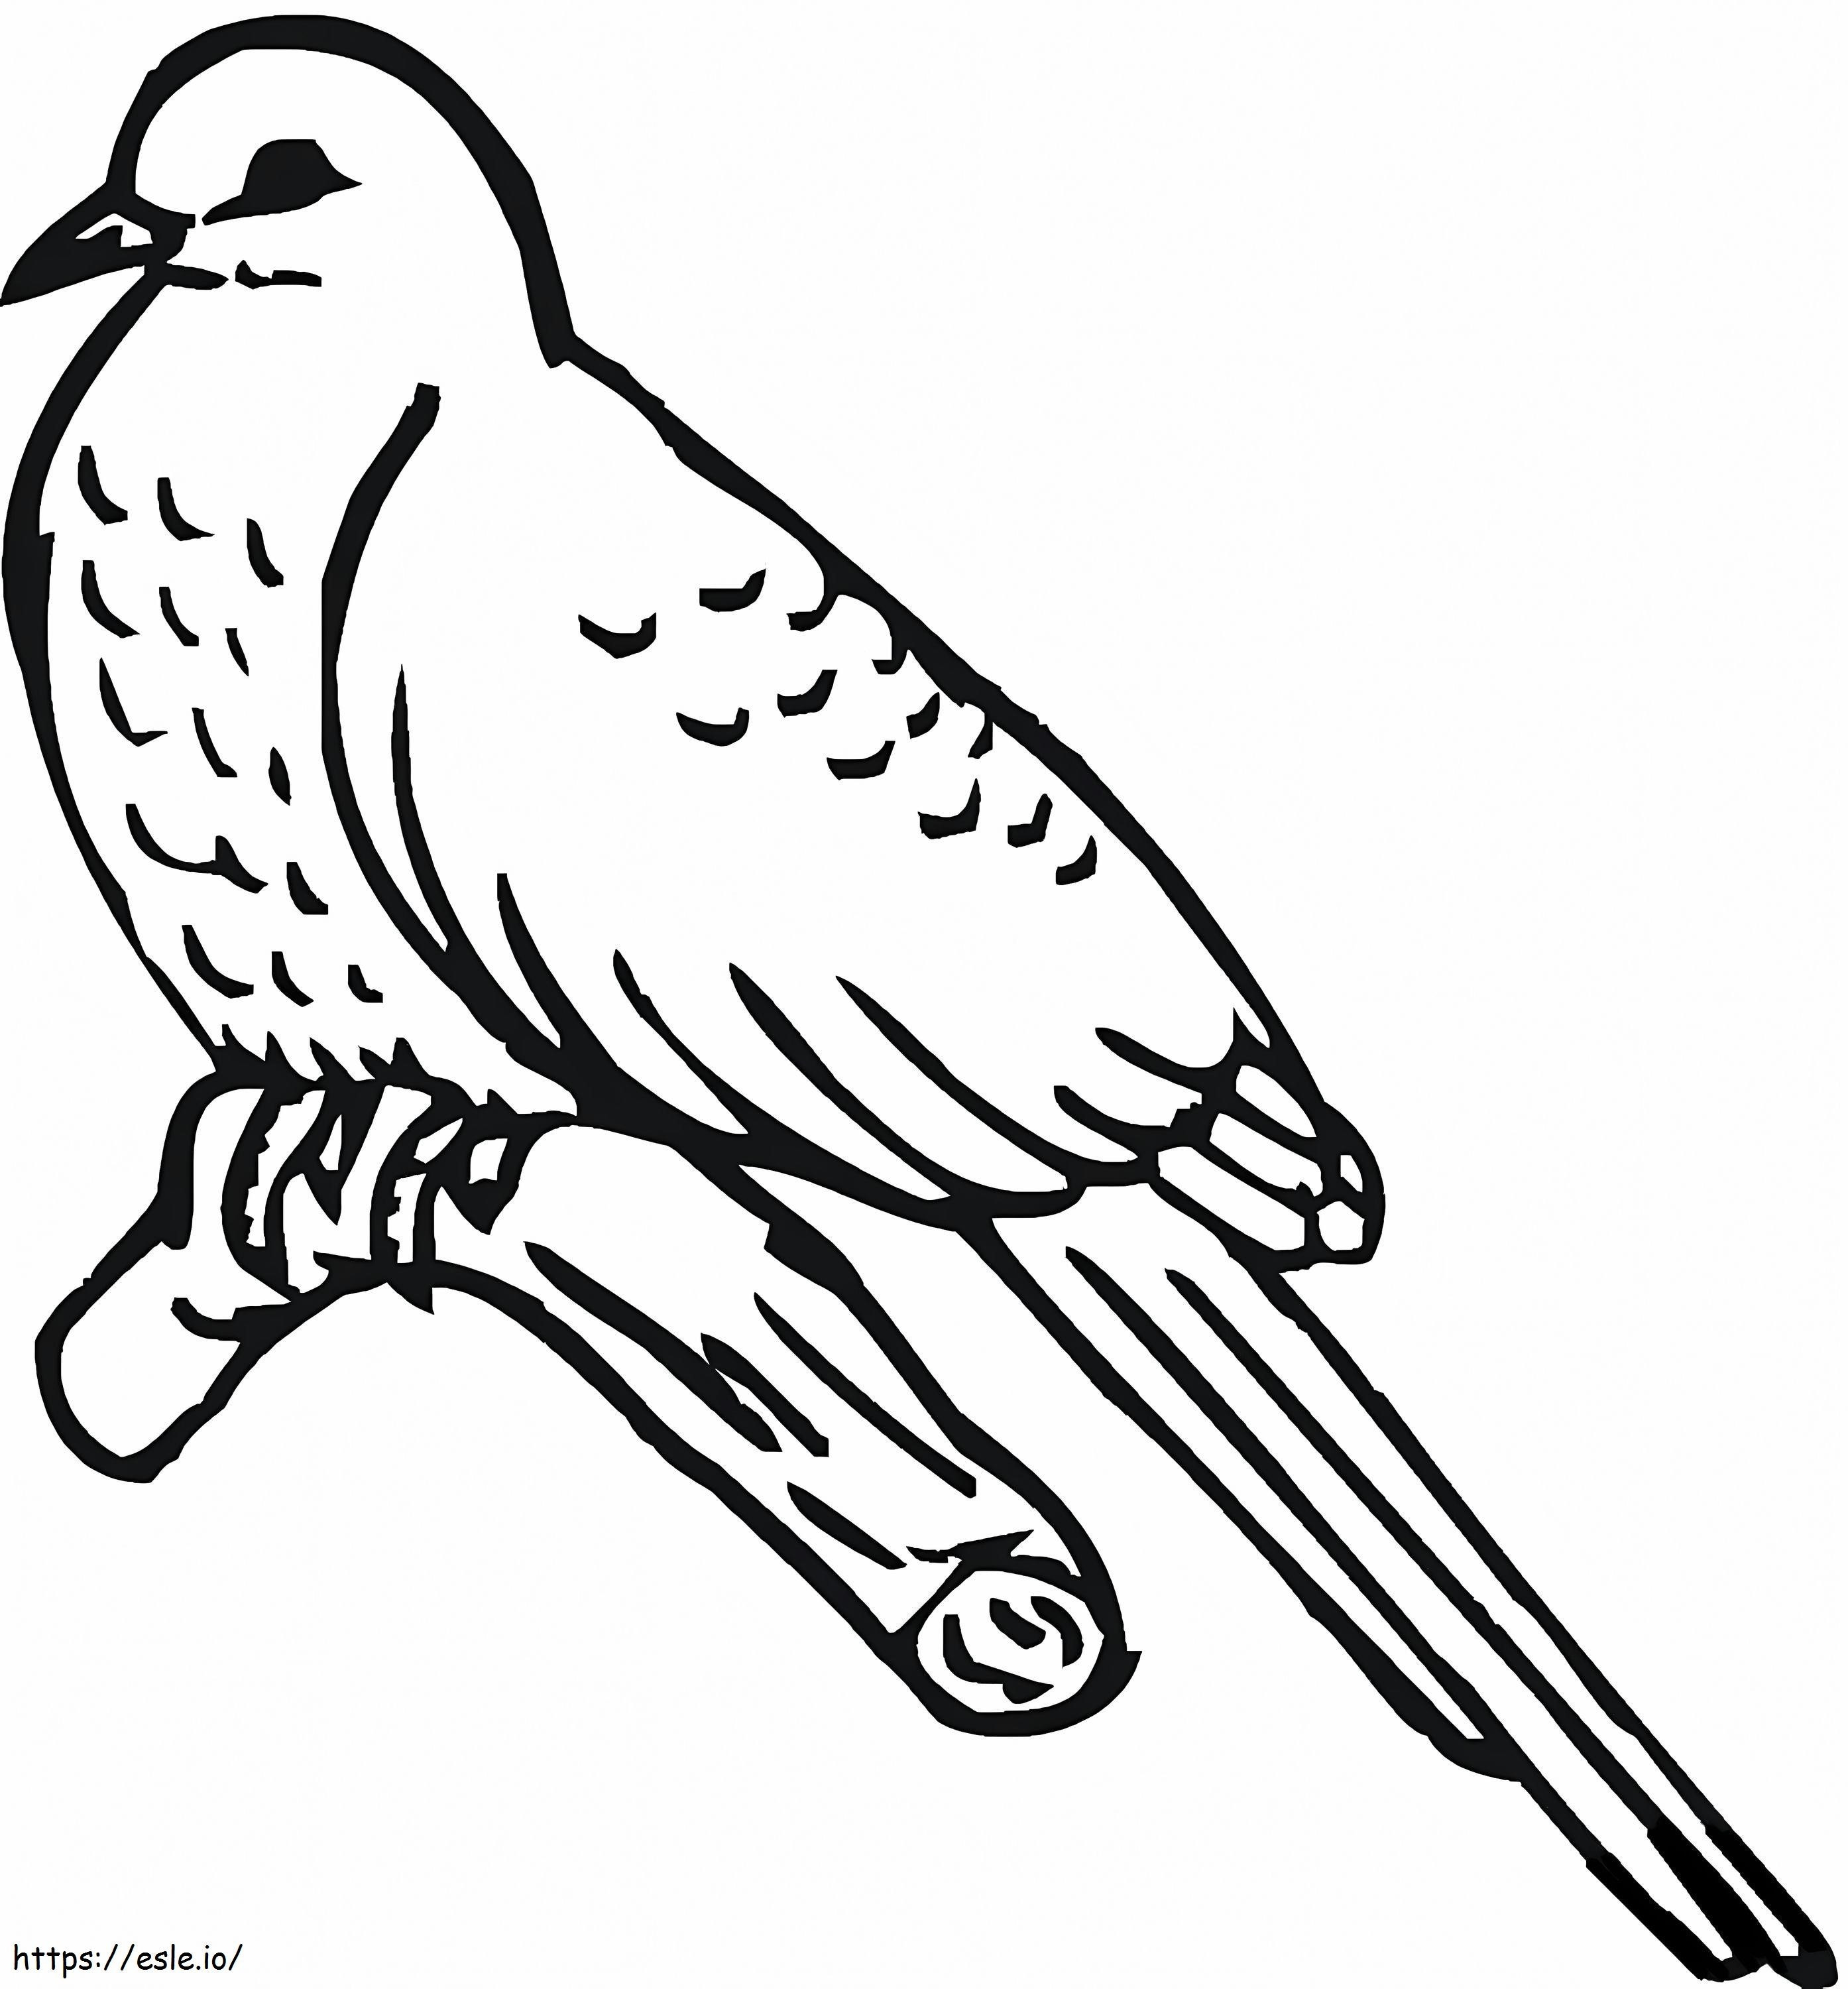 Cuckoo Bird coloring page